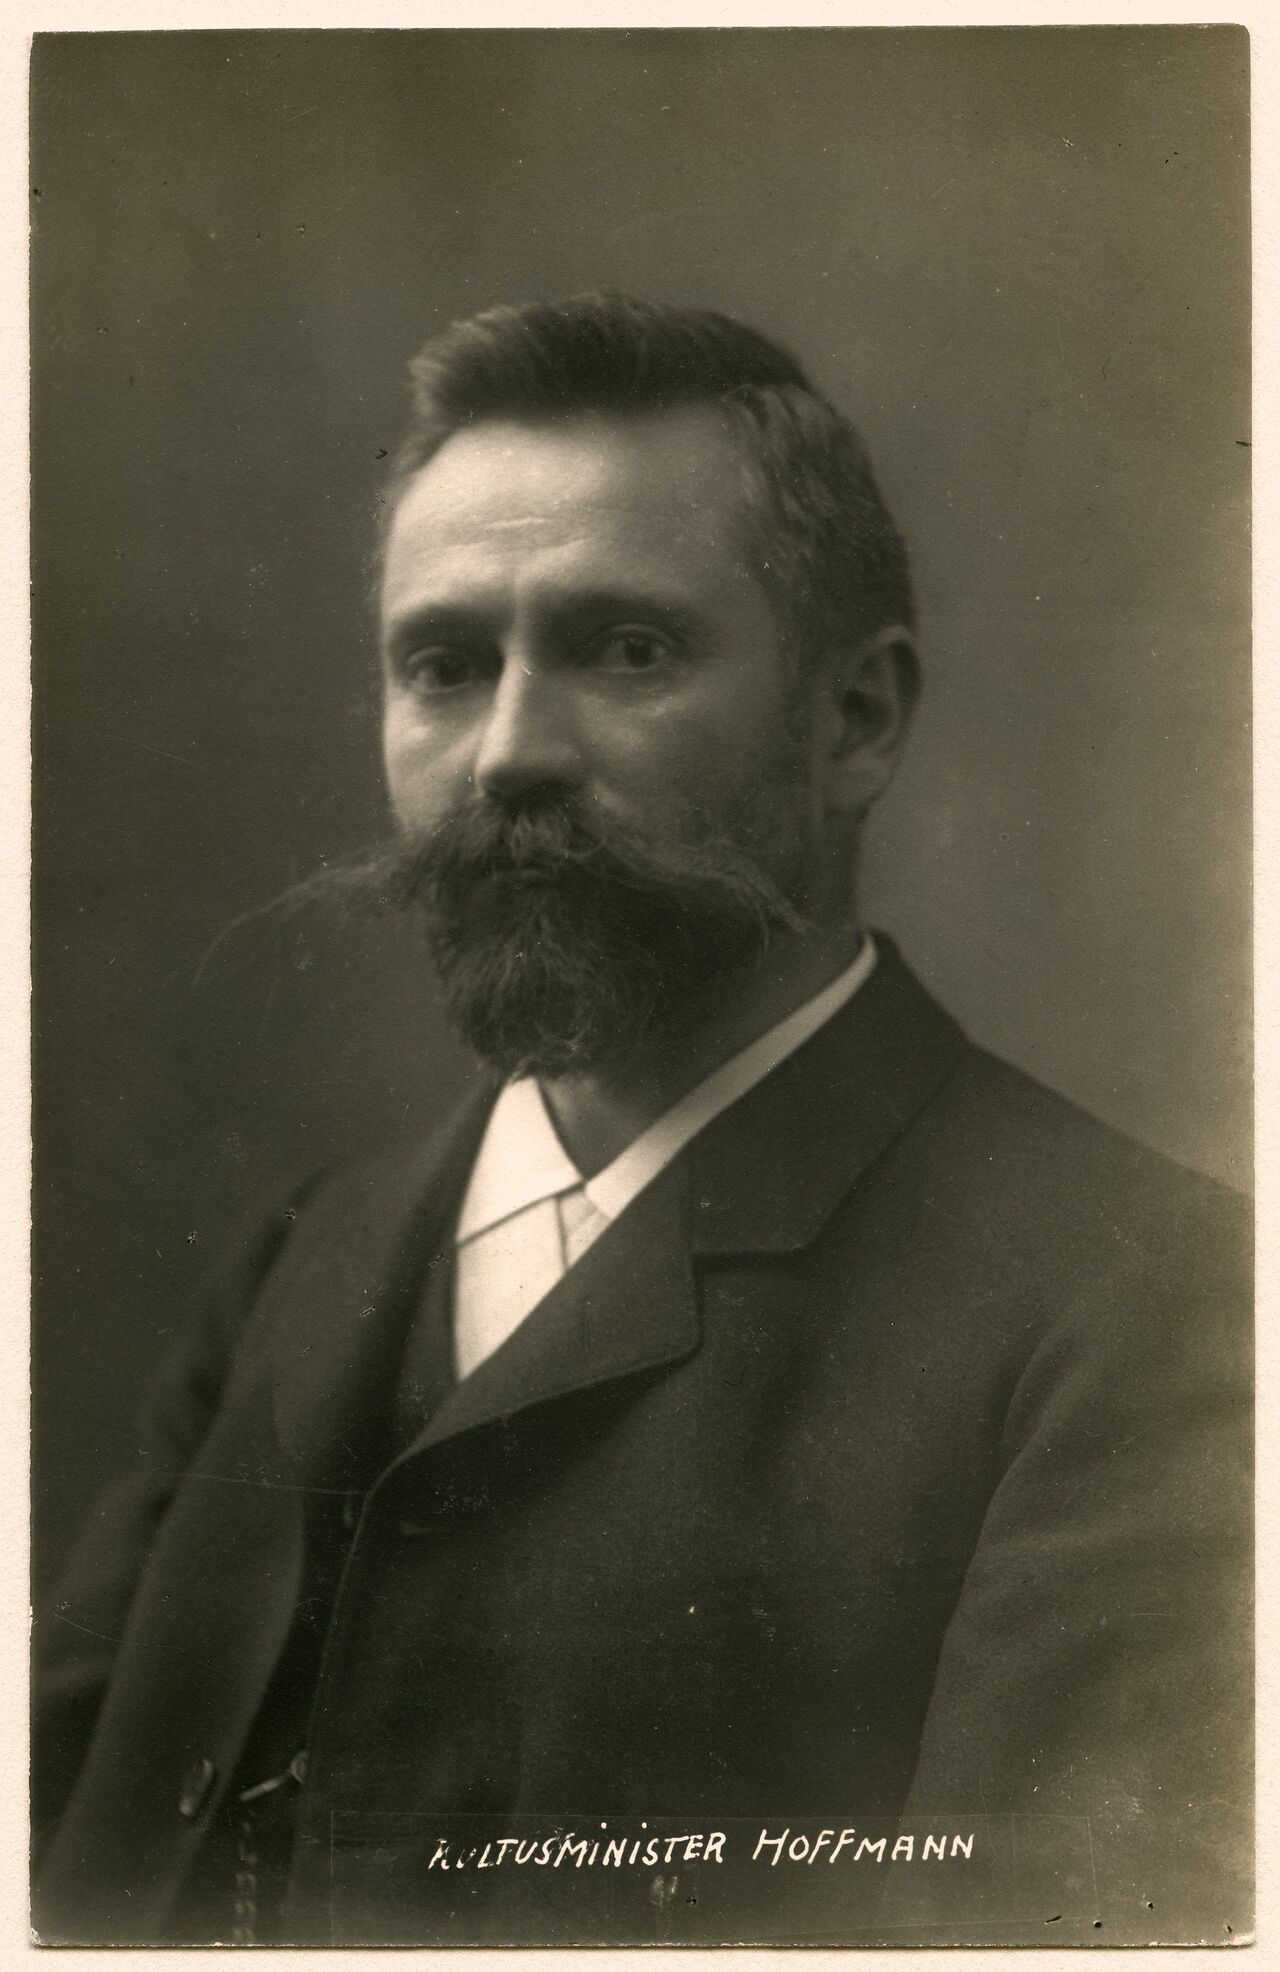 Postkarte mit dem Bildnis des bayerischen Kultusministers Johannes Hoffmann (1867-1930), Postkarte / Fotografie, Heinrich Hoffmann, November 1918